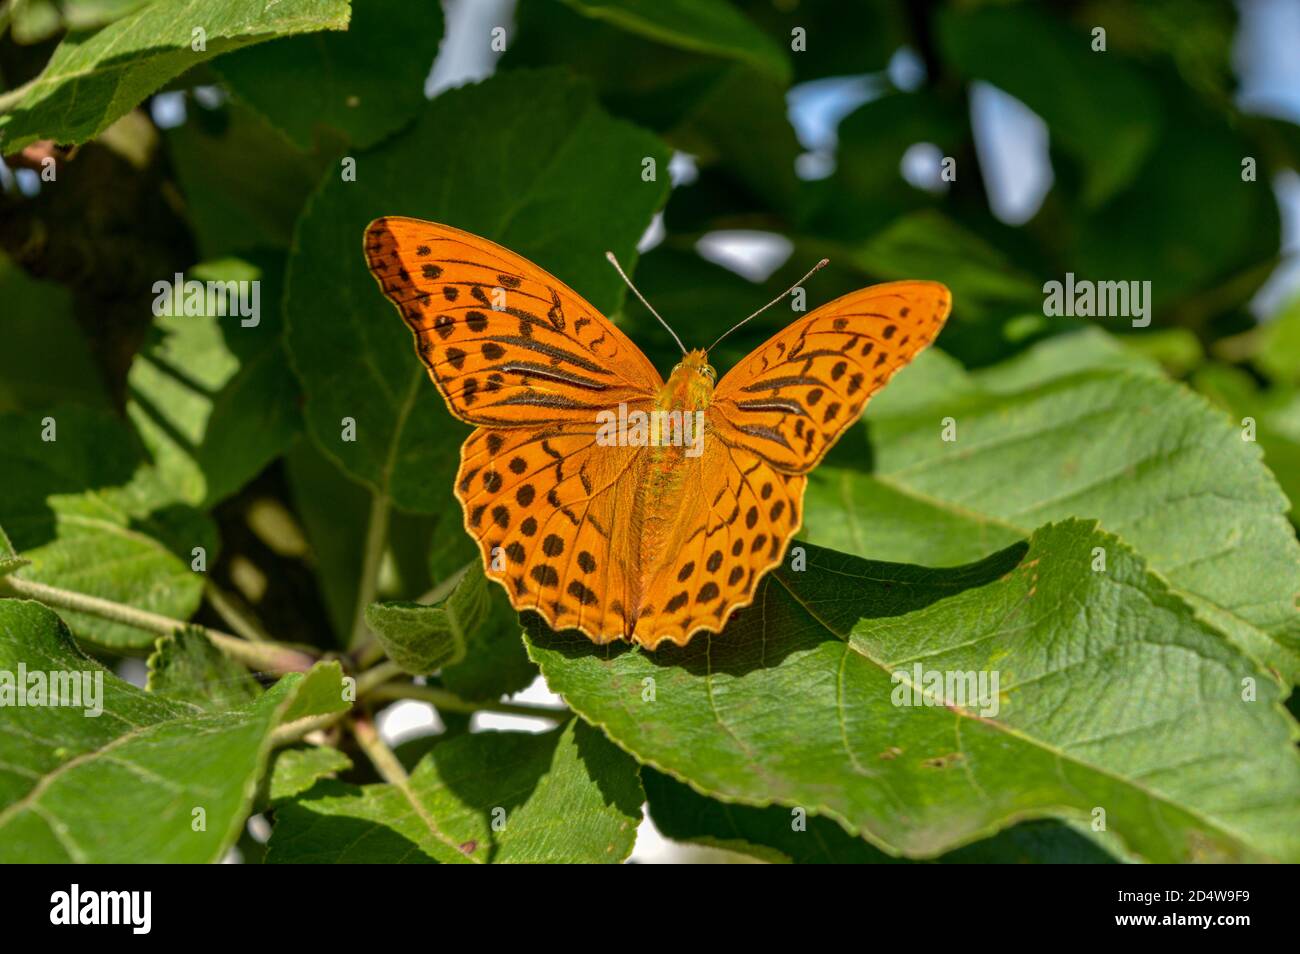 Farfalla arancione in un baldacchino di alberi, una calda giornata estiva in campagna, micro fotografia Foto Stock